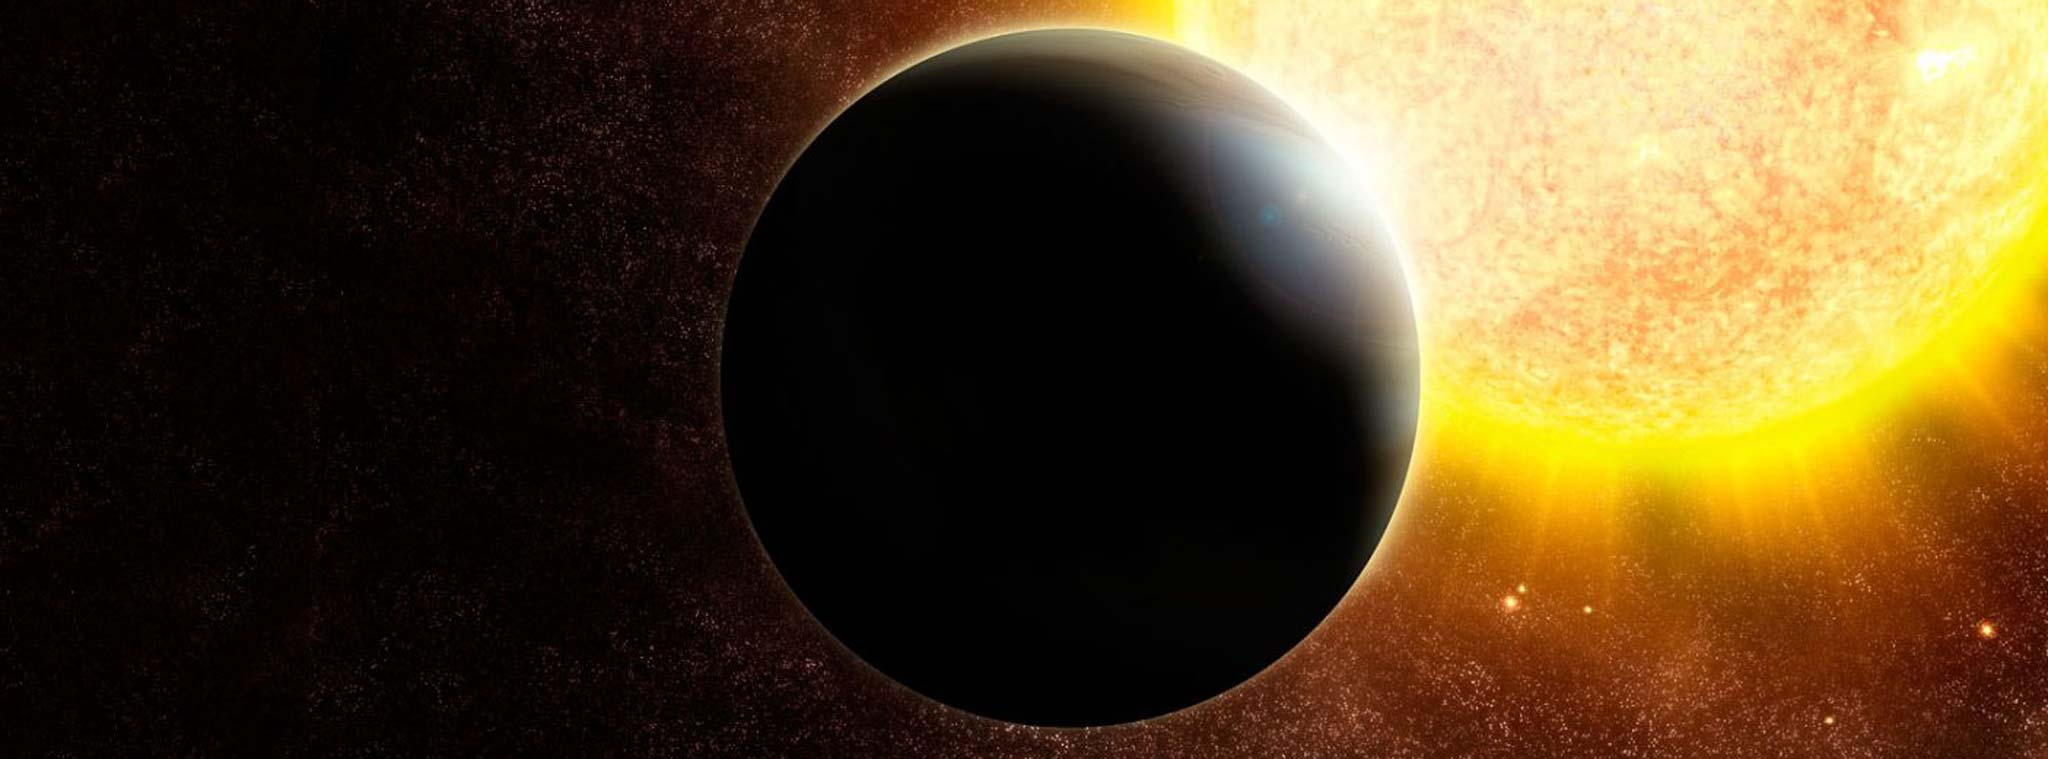 NASA và Google tuyên bố tìm thấy một hệ Mặt Trời giống như chúng ta